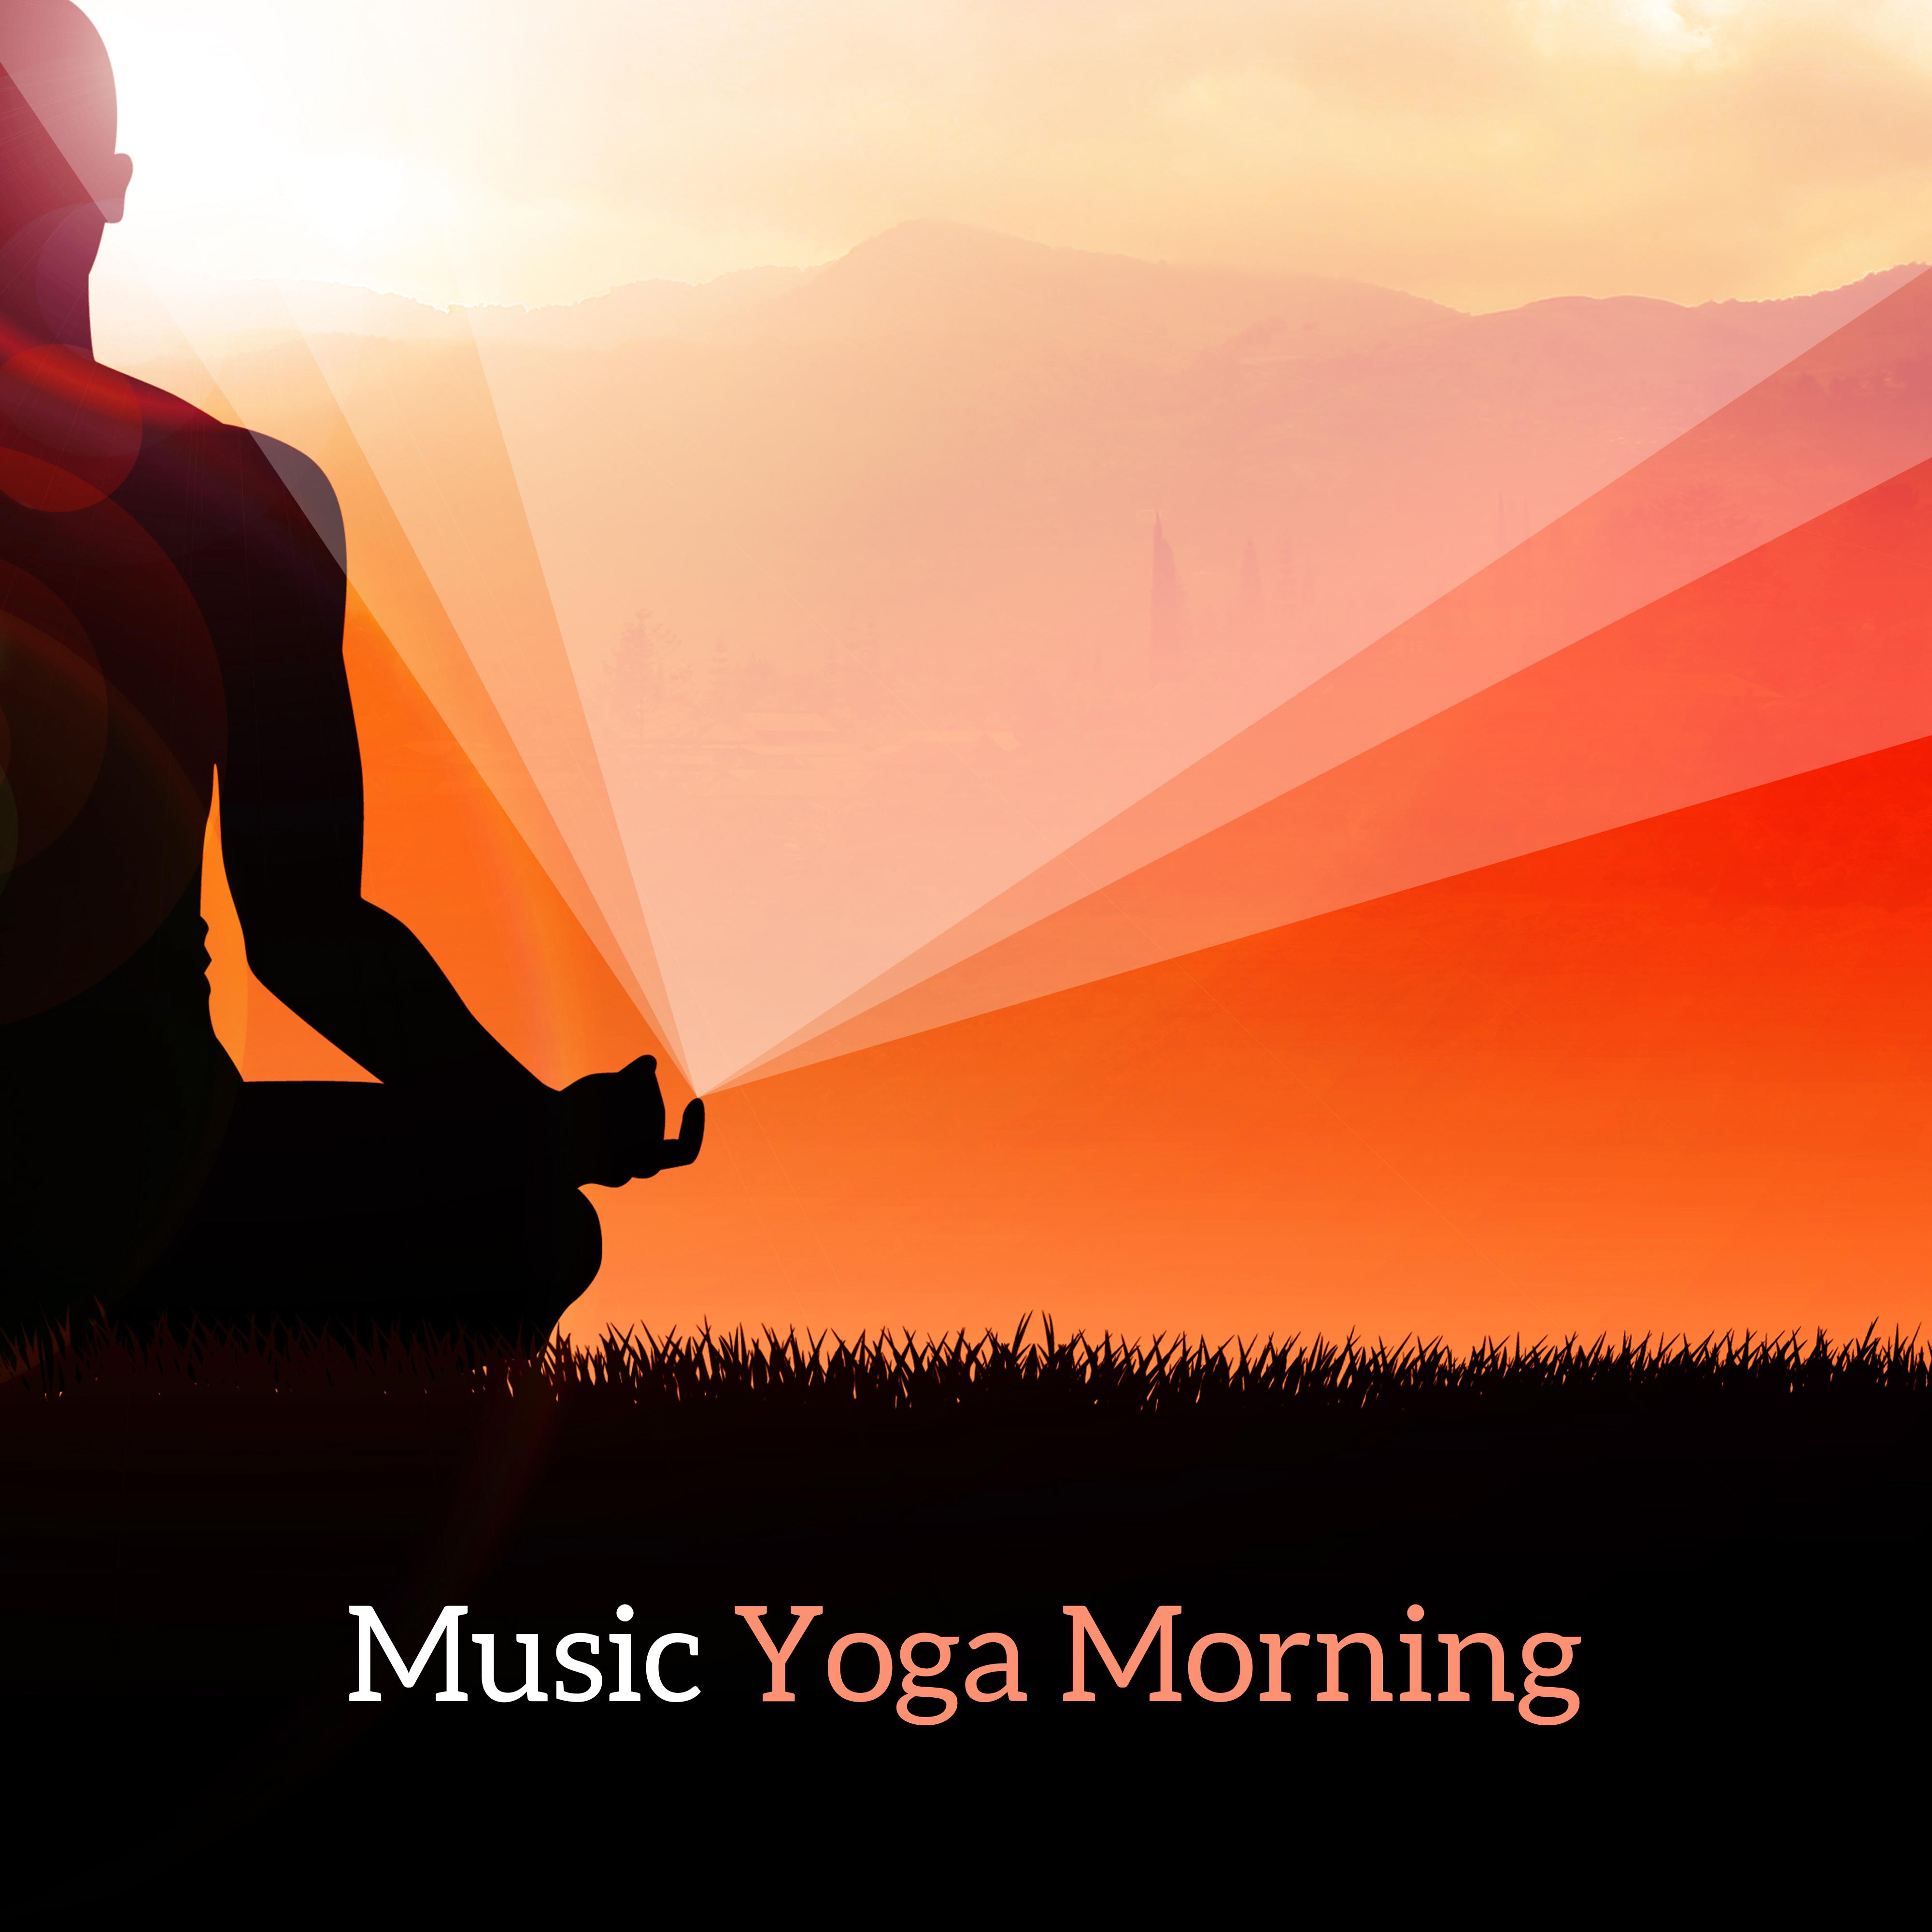 Music Yoga Morning